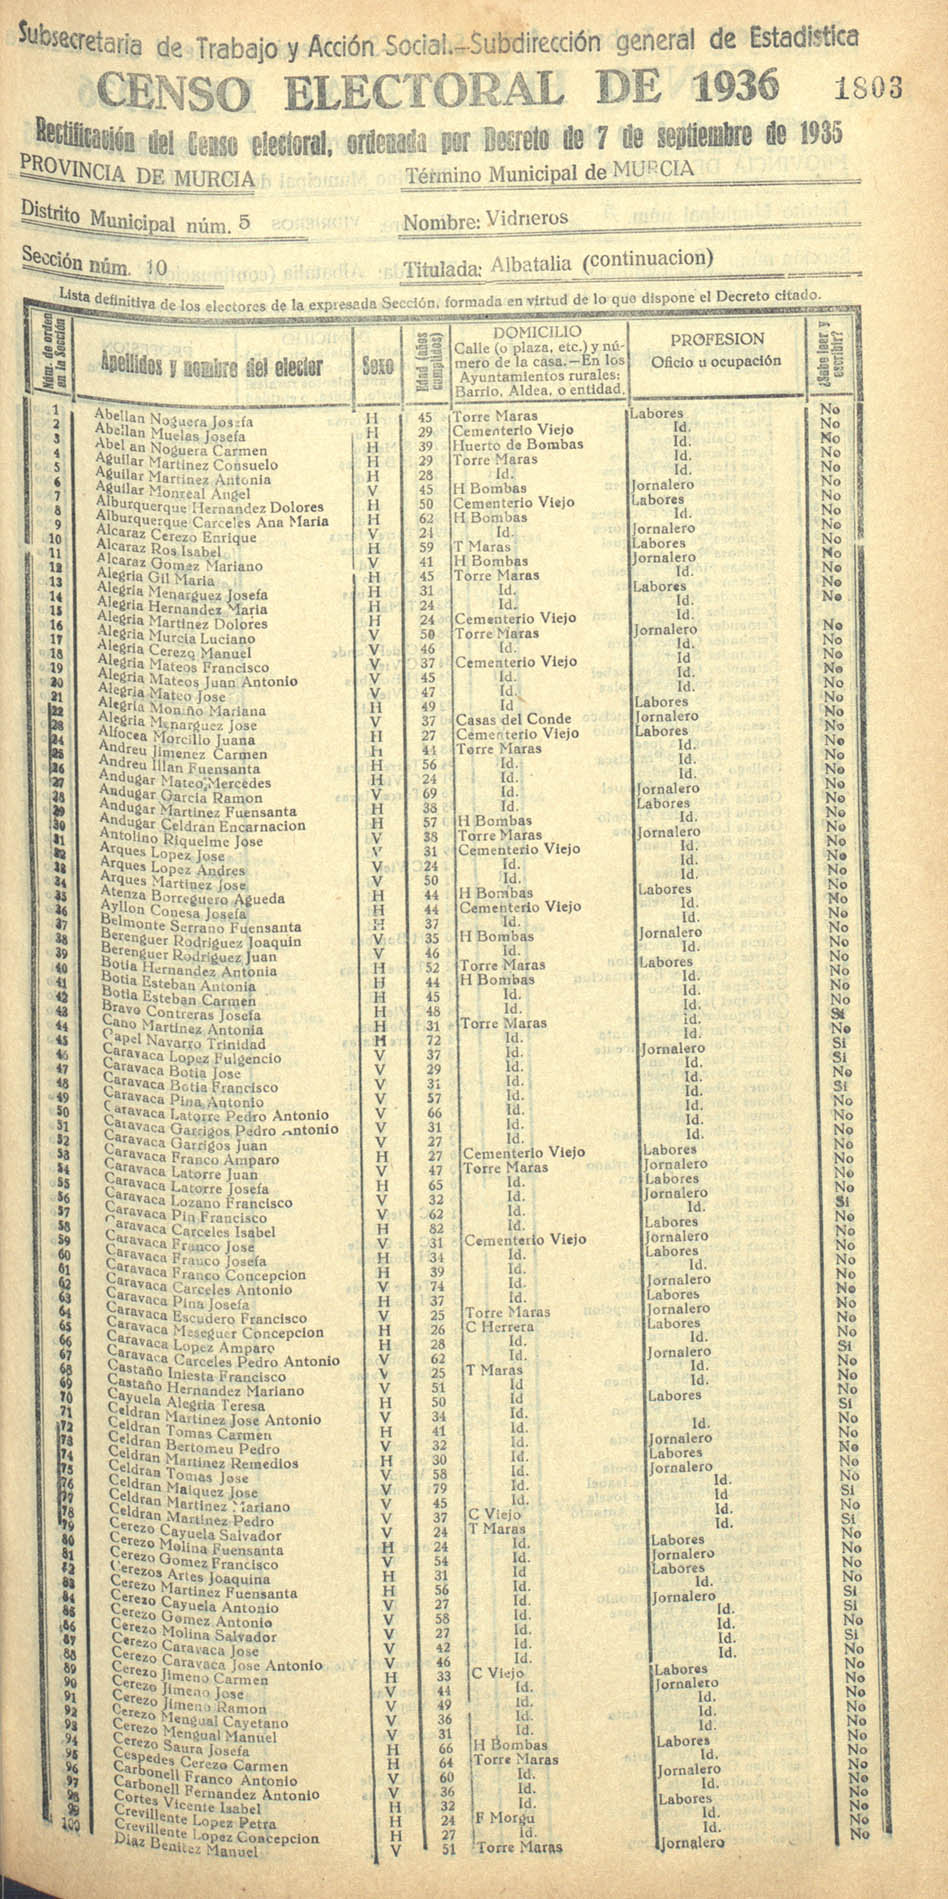 Censo electoral provincial de 1936. Murcia. Distrito 5º, Vidrieros. Sección 10ª, Albatalía (continuación)